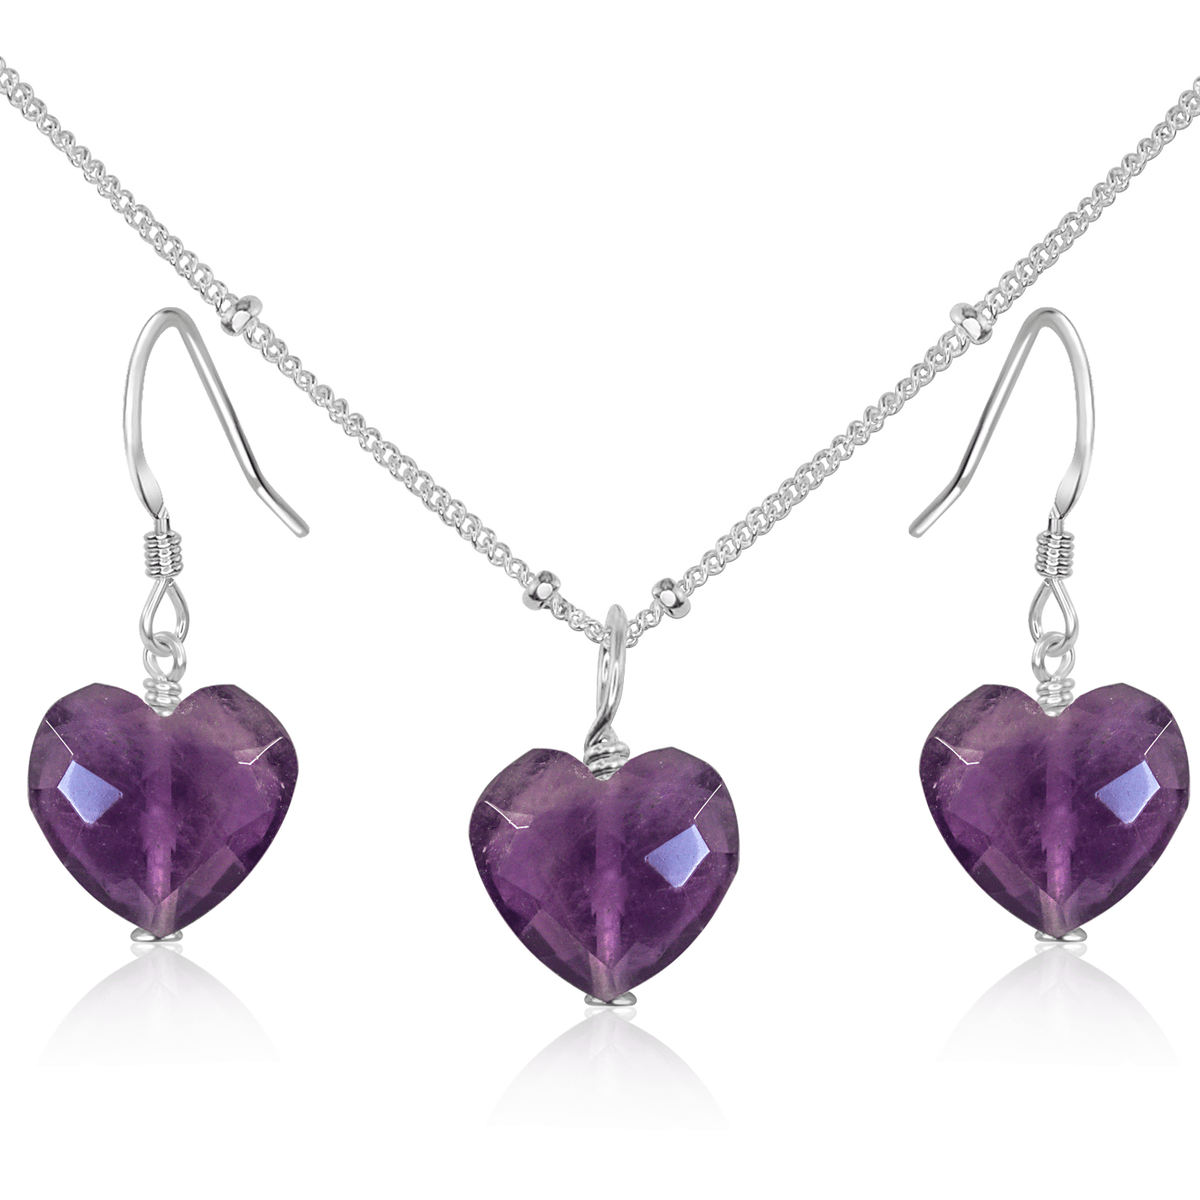 Amethyst Crystal Heart Jewellery Set - Amethyst Crystal Heart Jewellery Set - Sterling Silver / Satellite / Necklace & Earrings - Luna Tide Handmade Crystal Jewellery